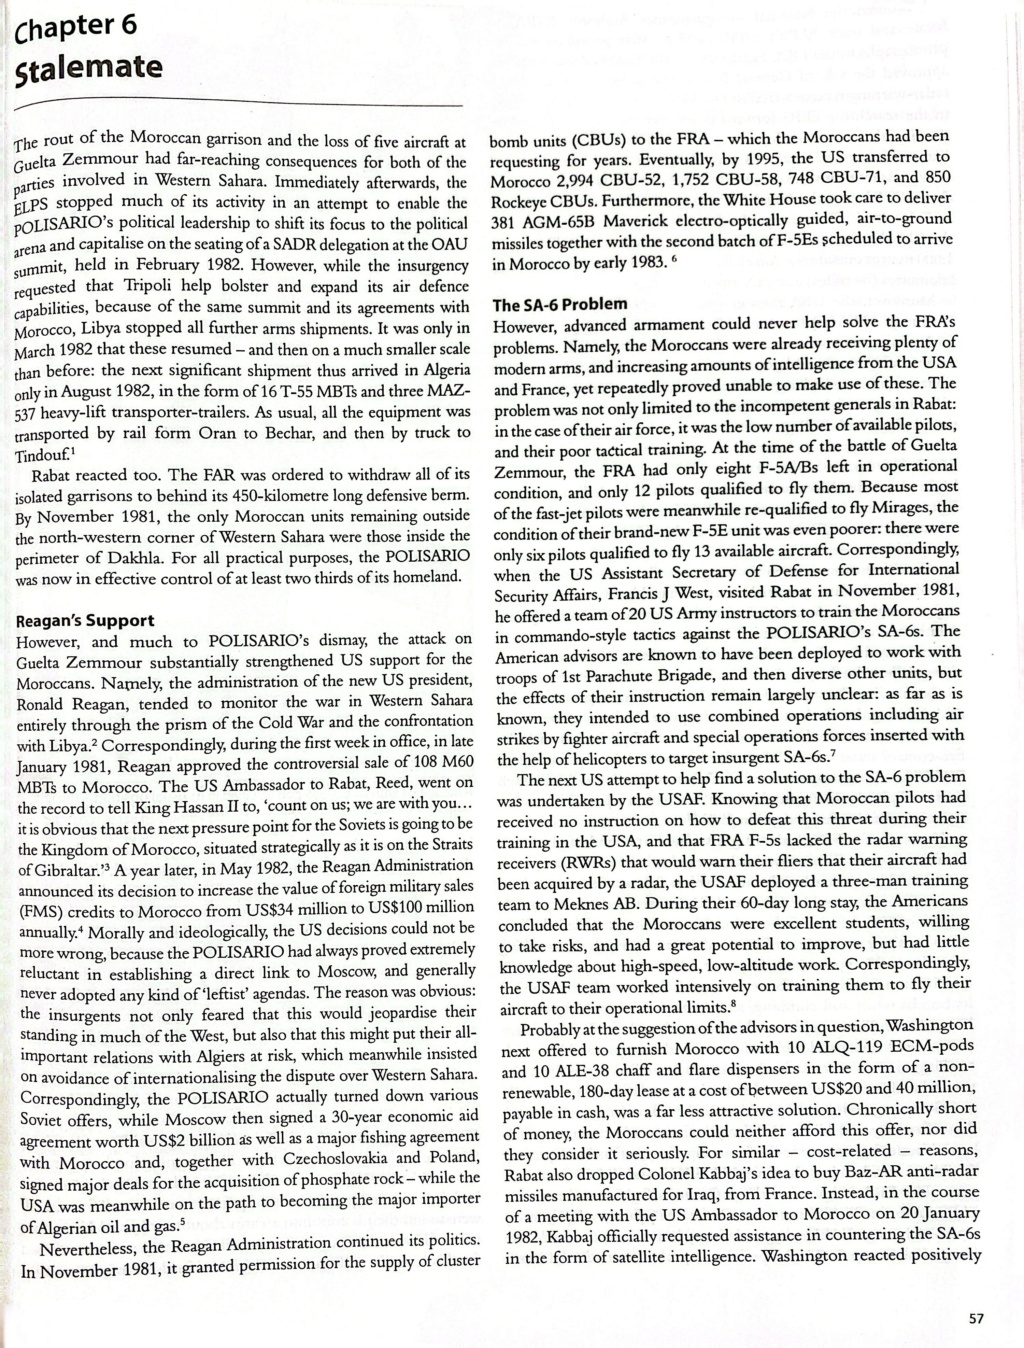 Le conflit armé du sahara marocain - Page 19 Camsca10